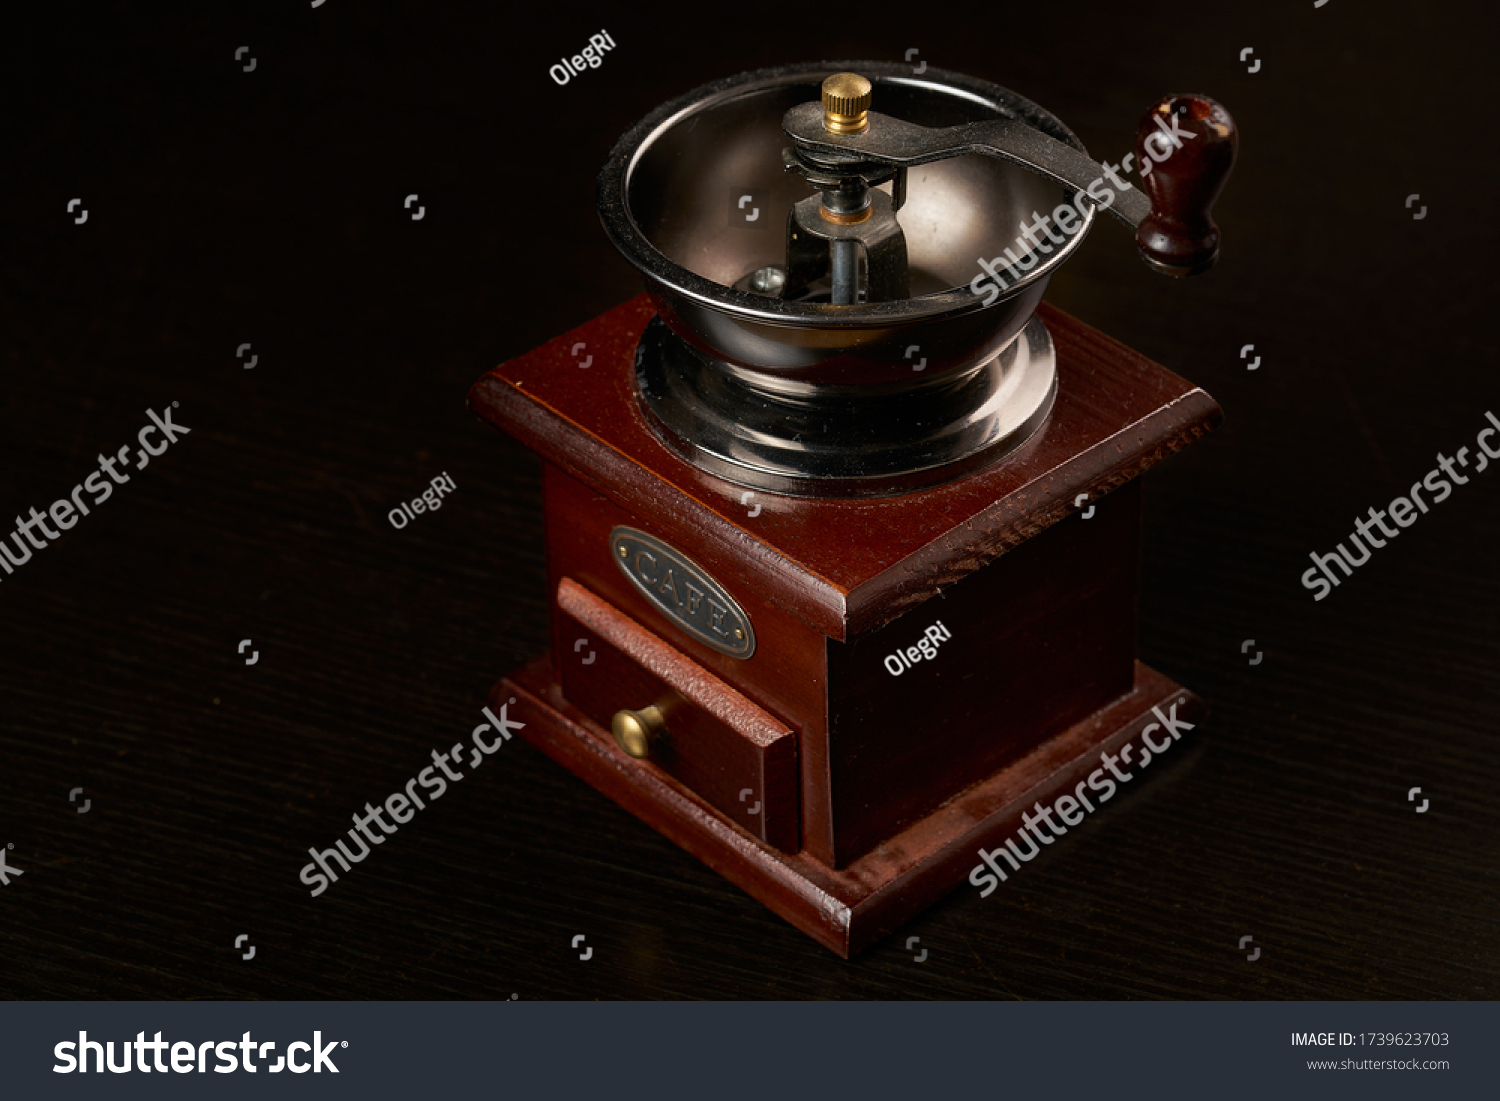 Manual coffee grinder for grinding coffee beans. Black background. Vintage coffee grinder #1739623703